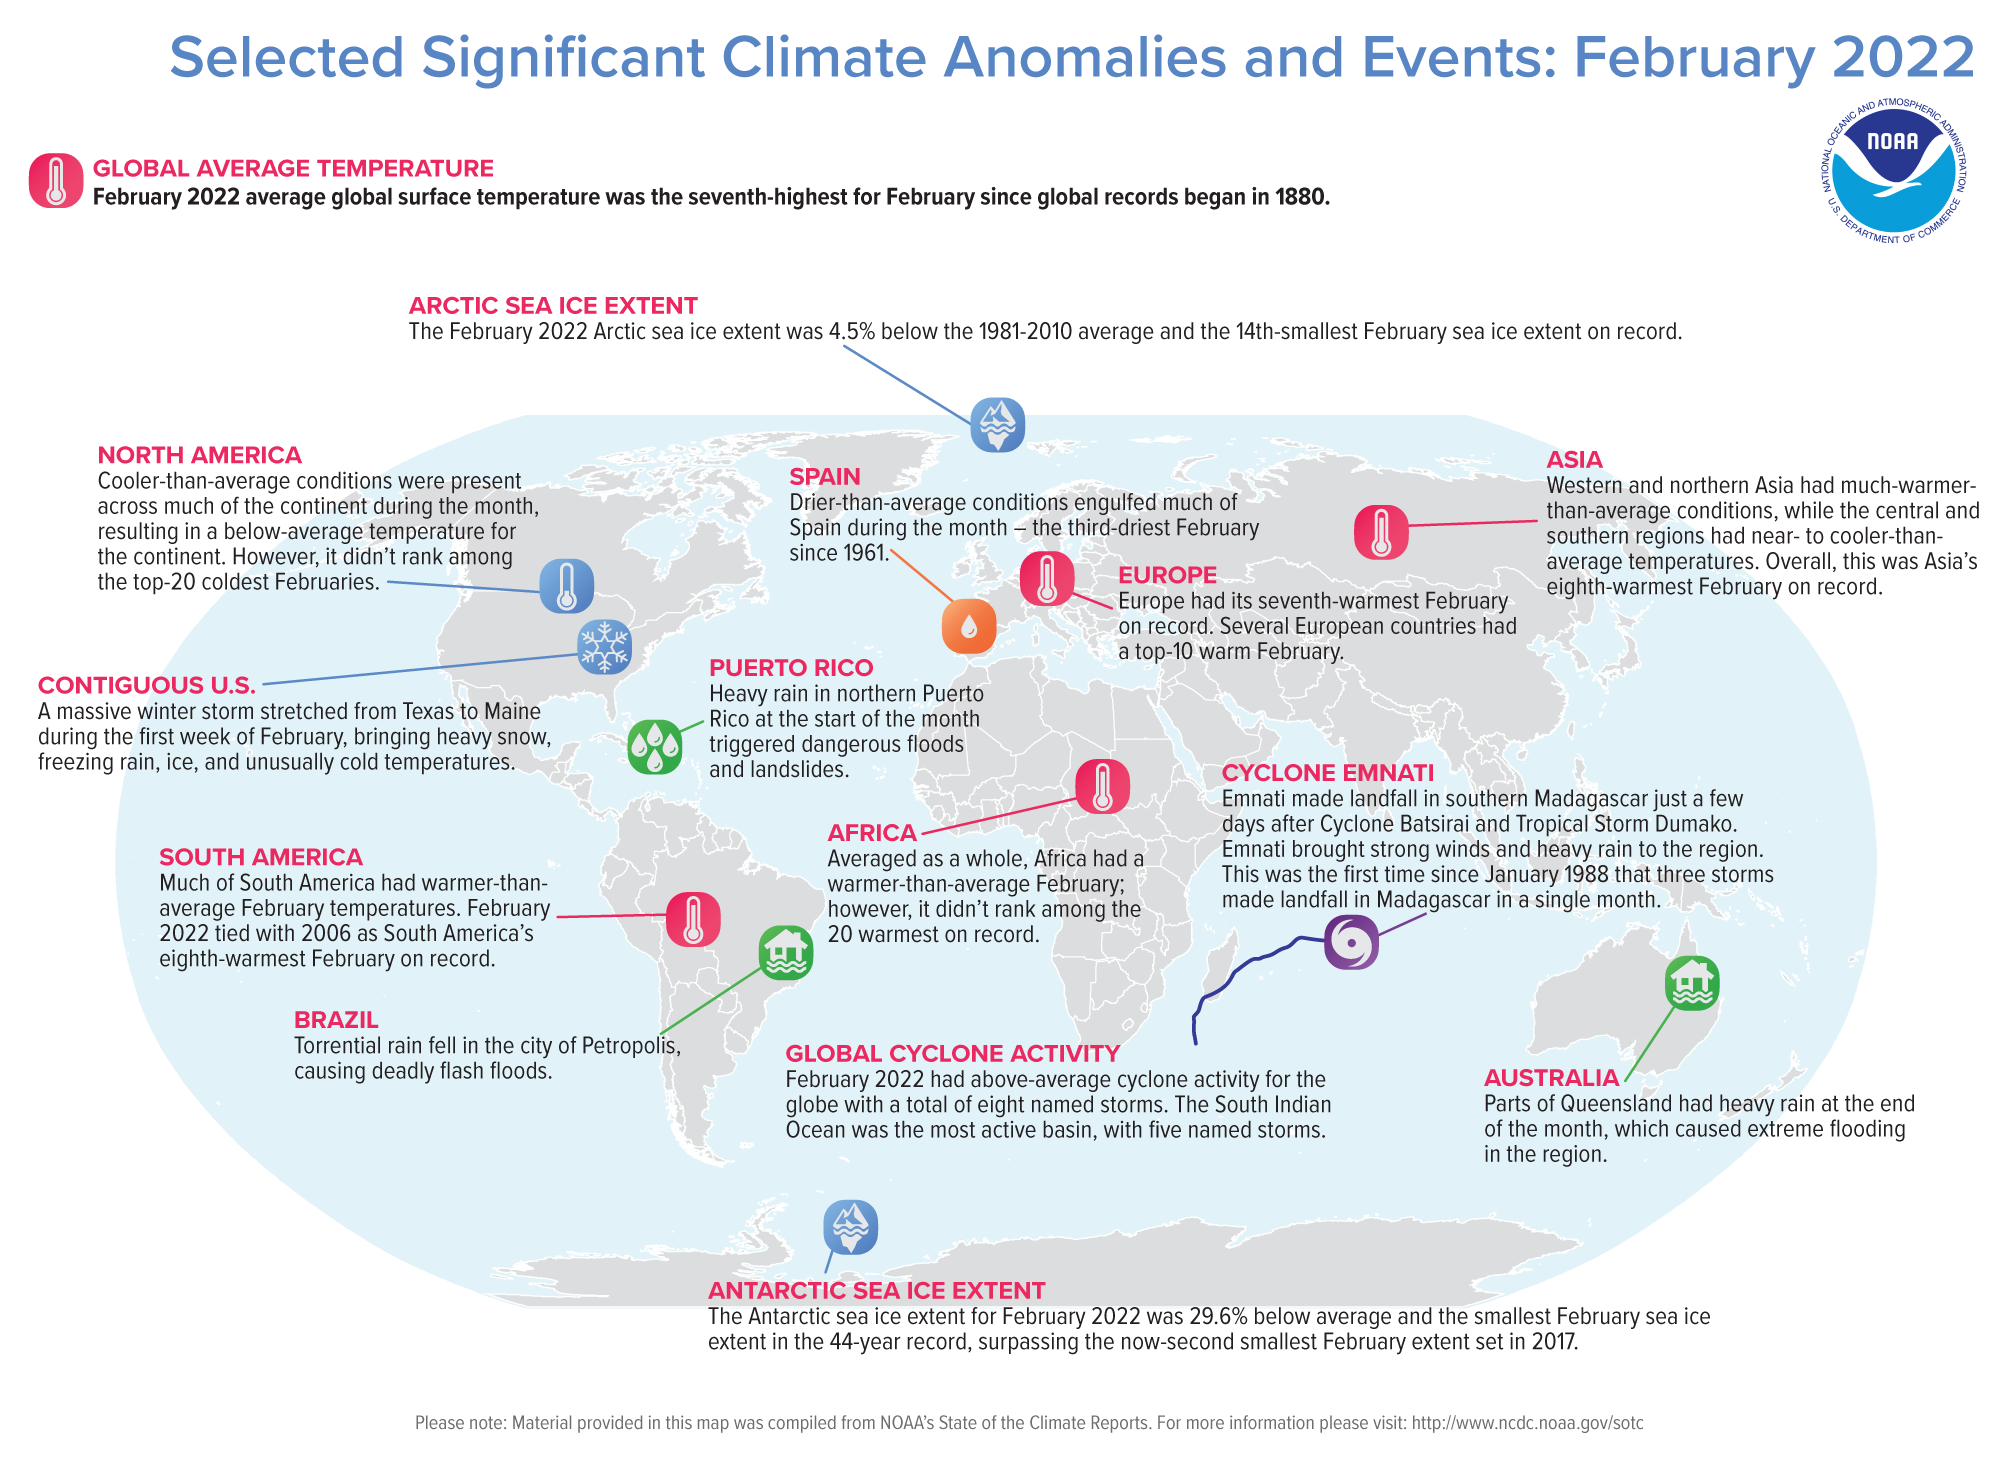 More information about "ΝΟΑΑ: Επιλεγμένες κλιματικές αποκλίσεις και γεγονότα για τον Φεβρουάριο του 2022"